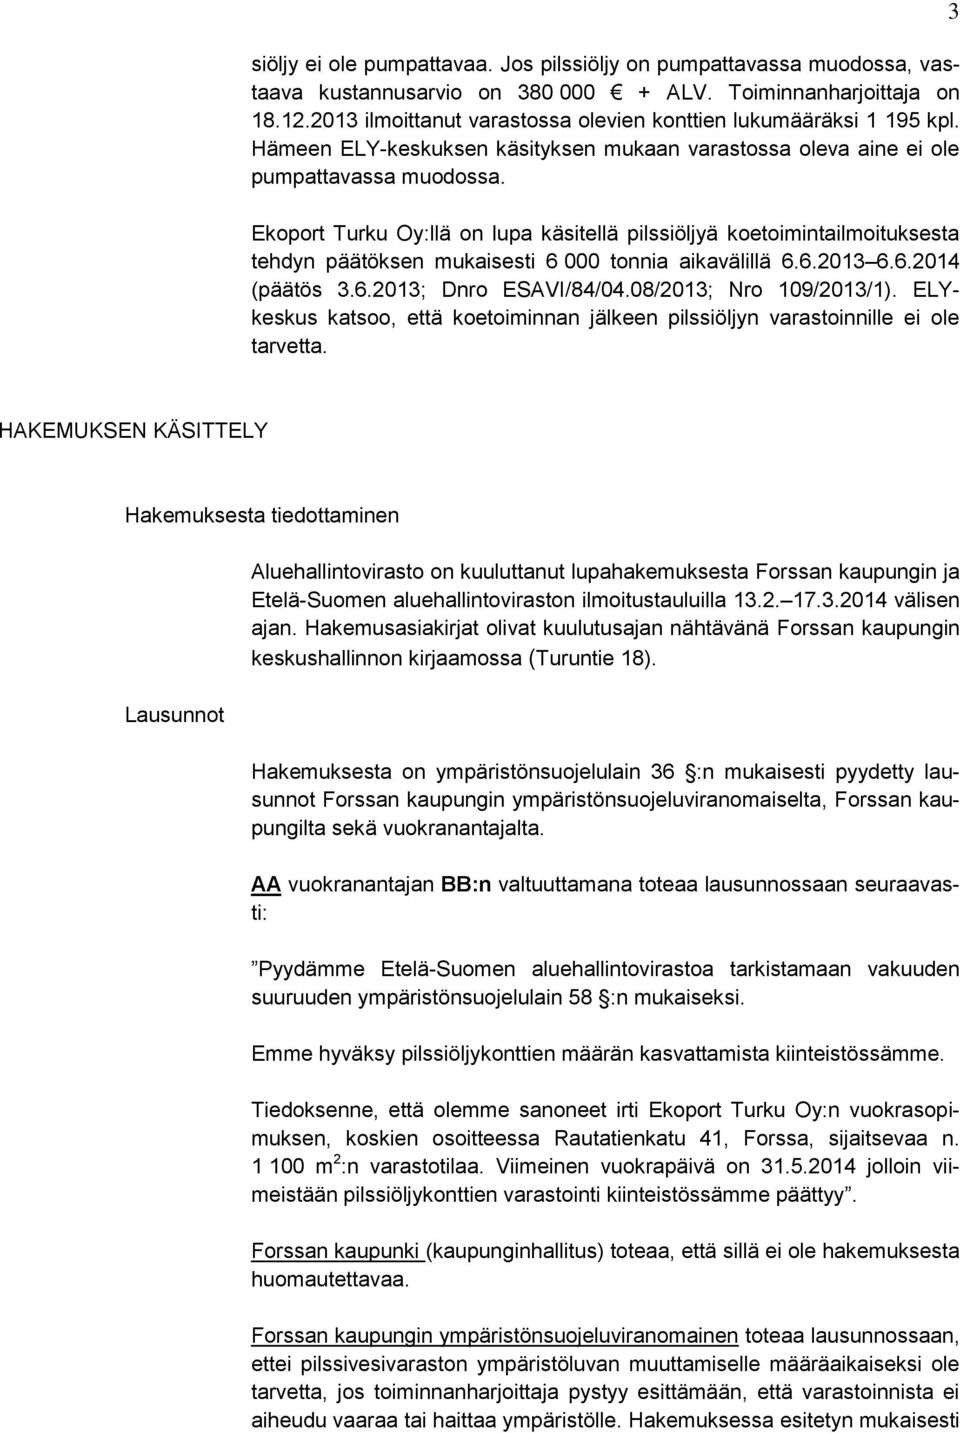 Ekoport Turku Oy:llä on lupa käsitellä pilssiöljyä koetoimintailmoituksesta tehdyn päätöksen mukaisesti 6 000 tonnia aikavälillä 6.6.2013 6.6.2014 (päätös 3.6.2013; Dnro ESAVI/84/04.